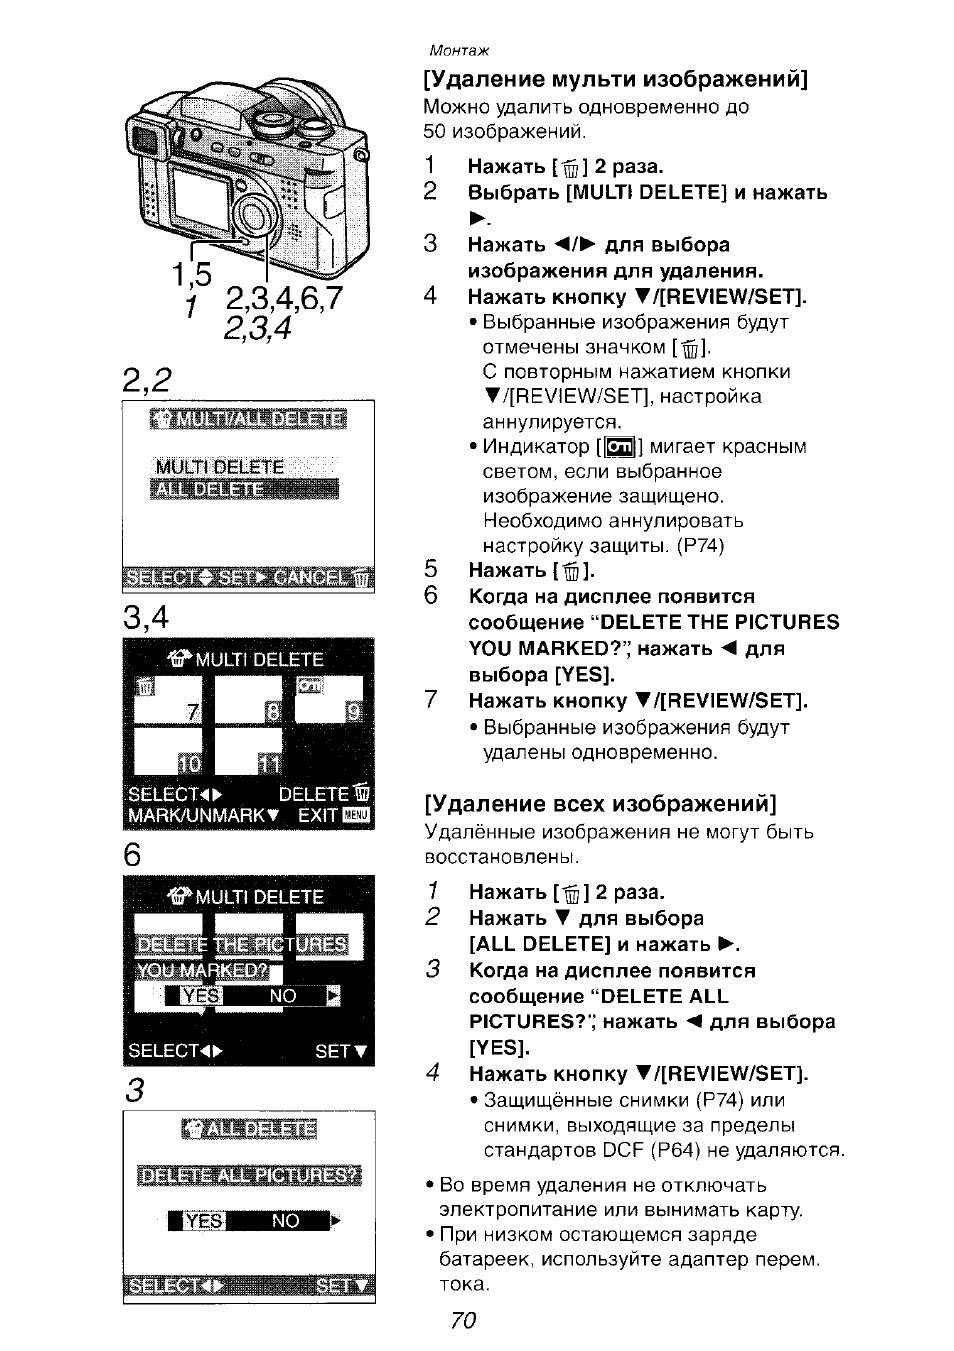 Удаление мульти изображений, Удаление всех изображений | Инструкция по эксплуатации Panasonic DMC-FZ2EN | Страница 70 / 154